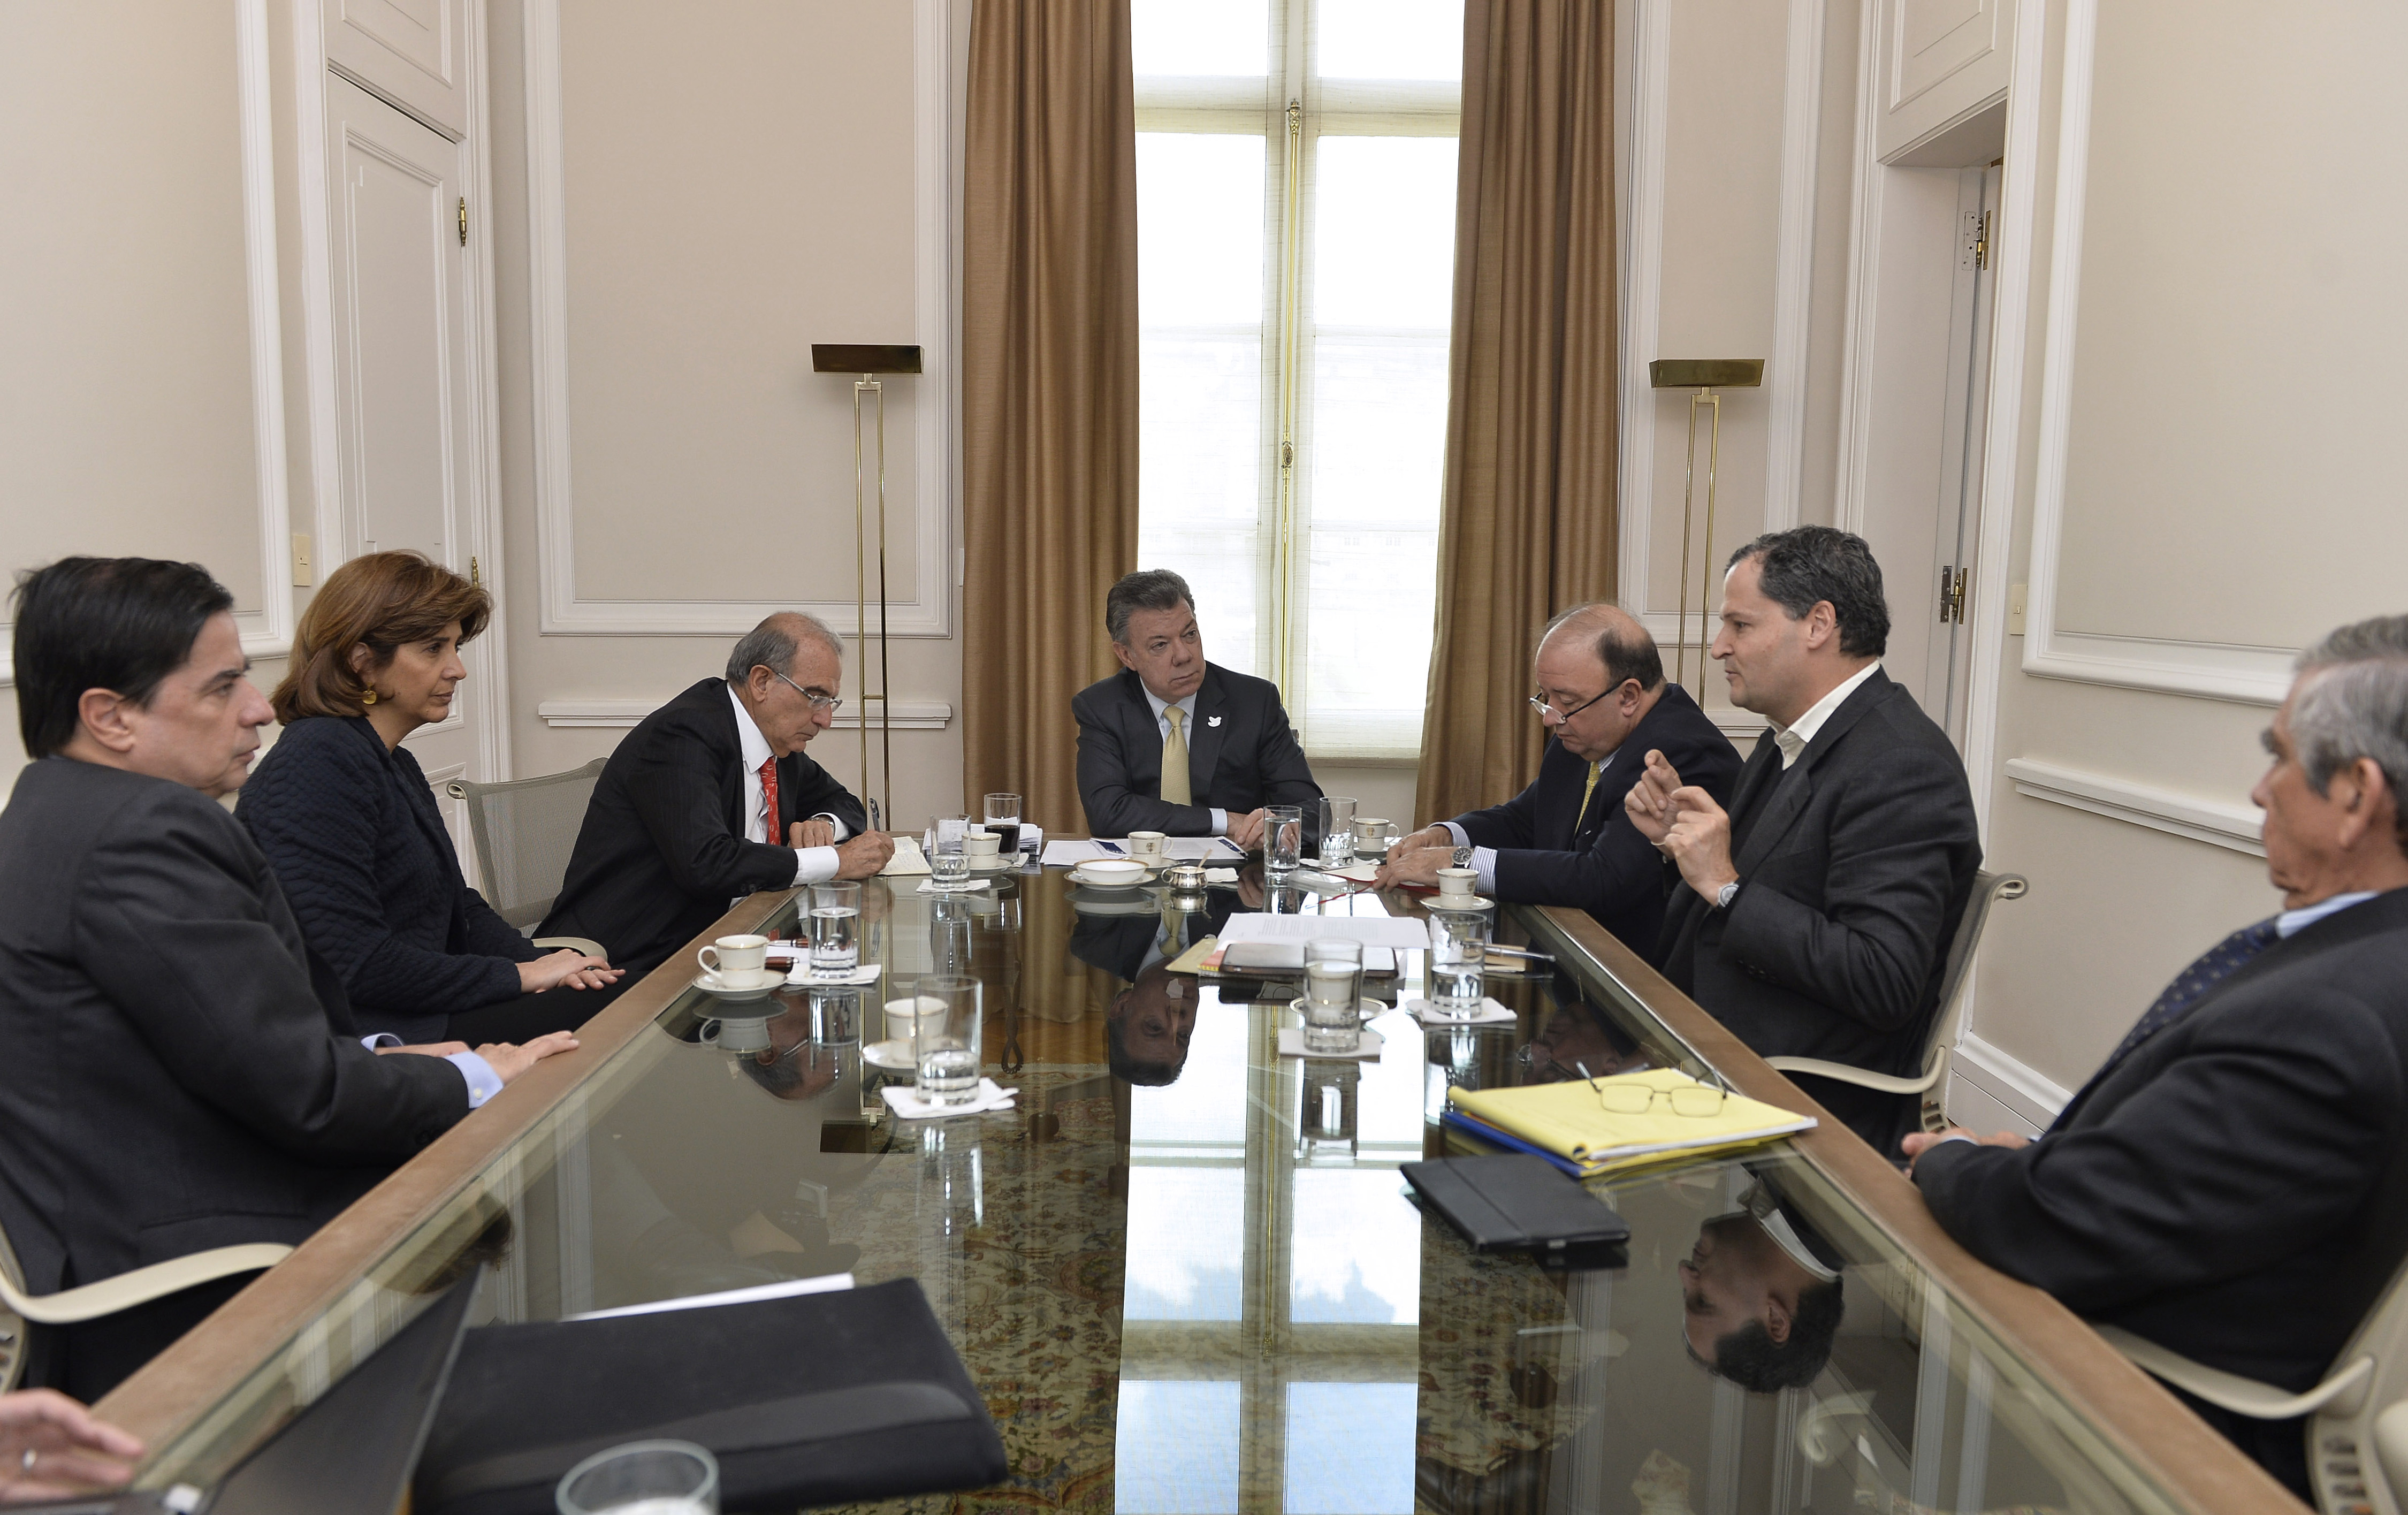 Canciller María Ángela Holguín participó en la reunión que sostuvo el Presidente Juan Manuel Santos con Equipo Negociador